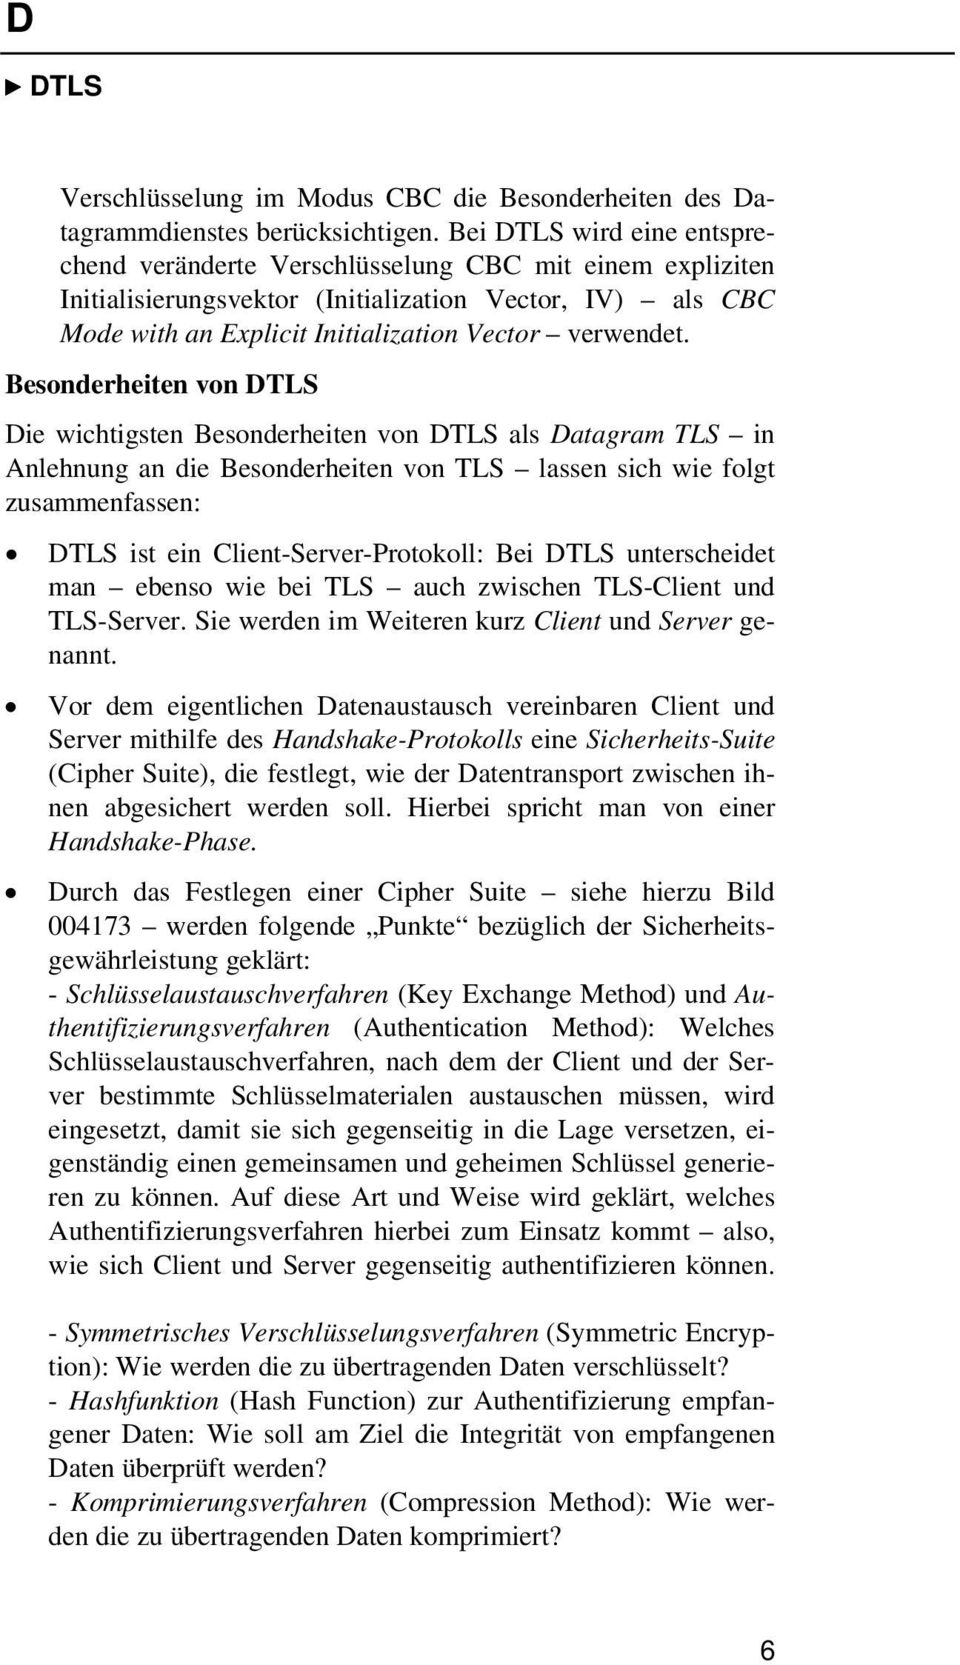 Besonderheiten von DTLS Die wichtigsten Besonderheiten von DTLS als Datagram TLS in Anlehnung an die Besonderheiten von TLS lassen sich wie folgt zusammenfassen: DTLS ist ein Client-Server-Protokoll: